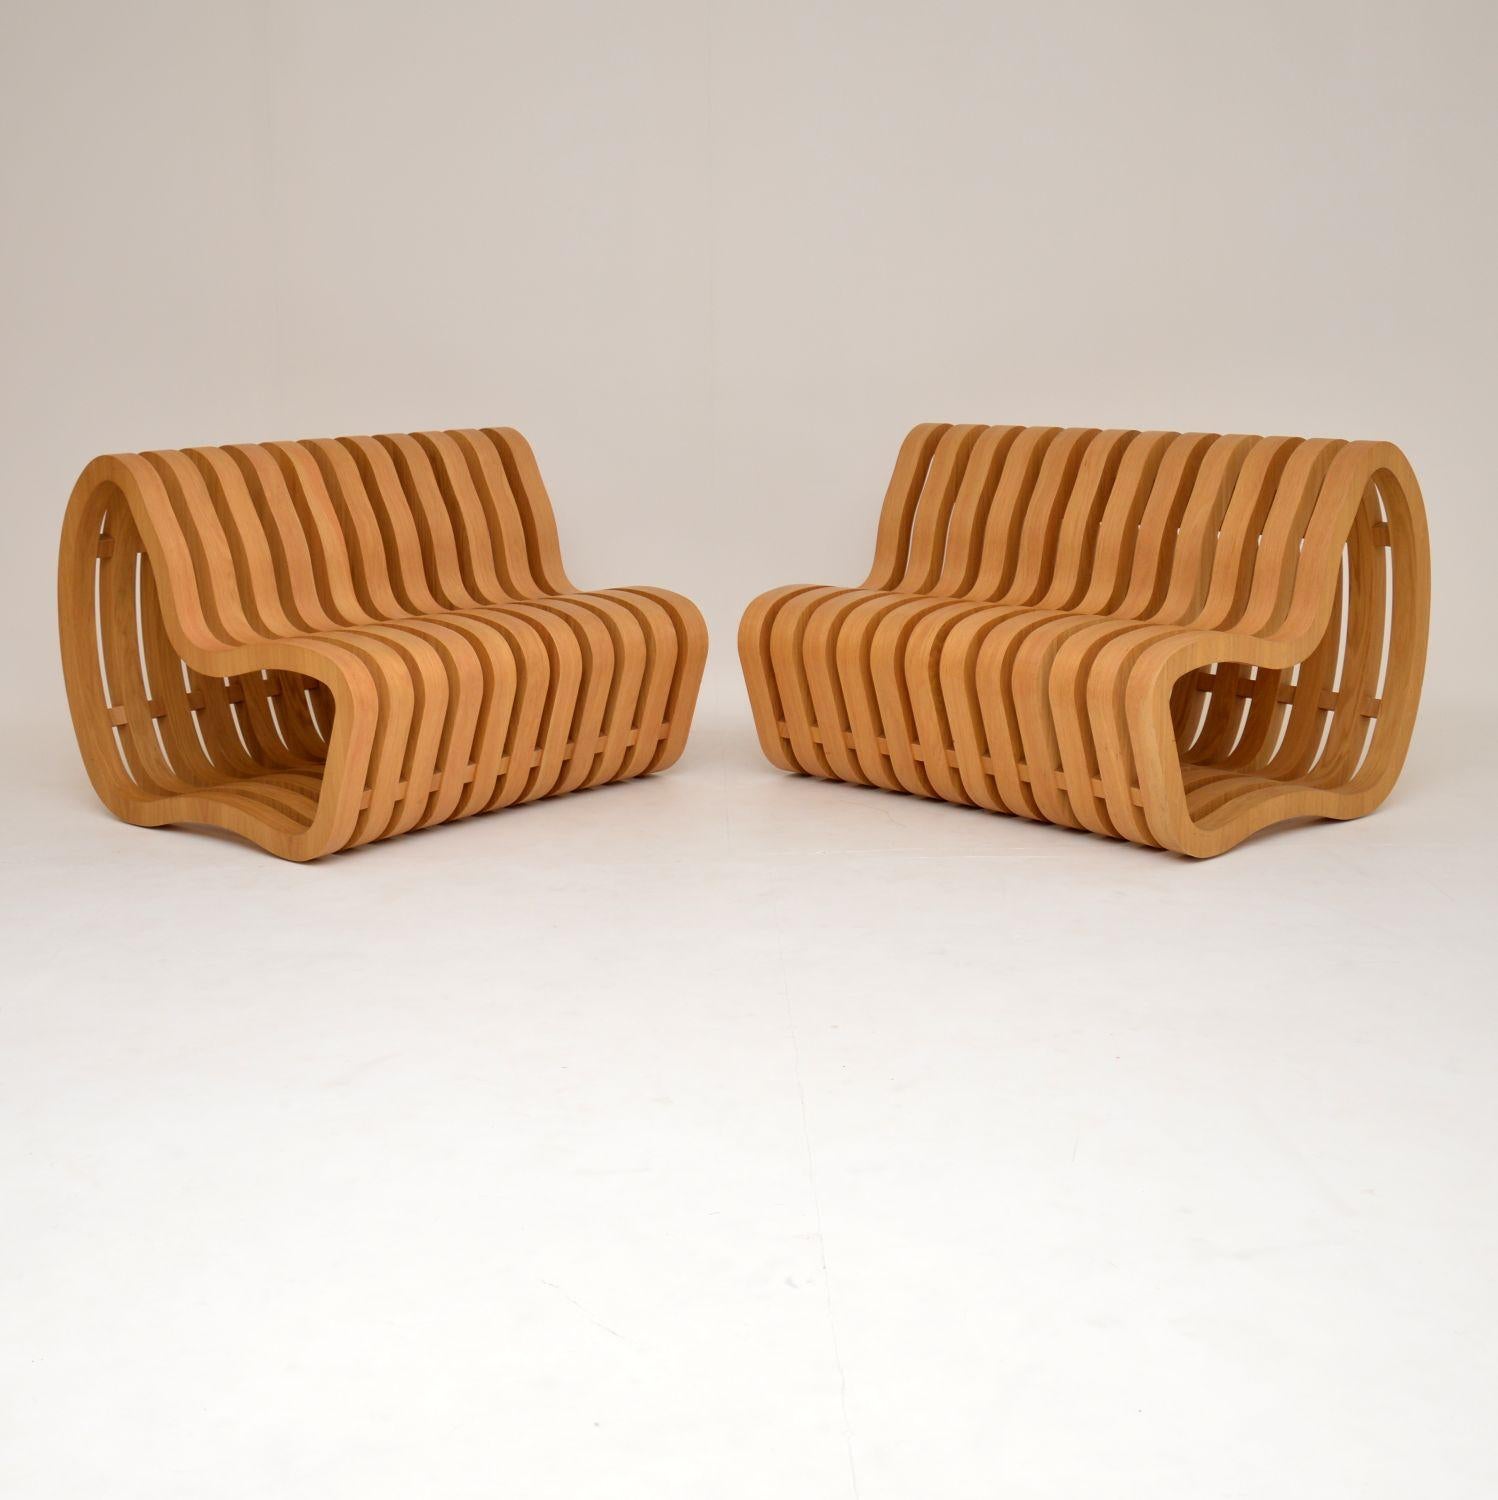 Wood Modernist “Curve Bench” by Nina Moeller Designs